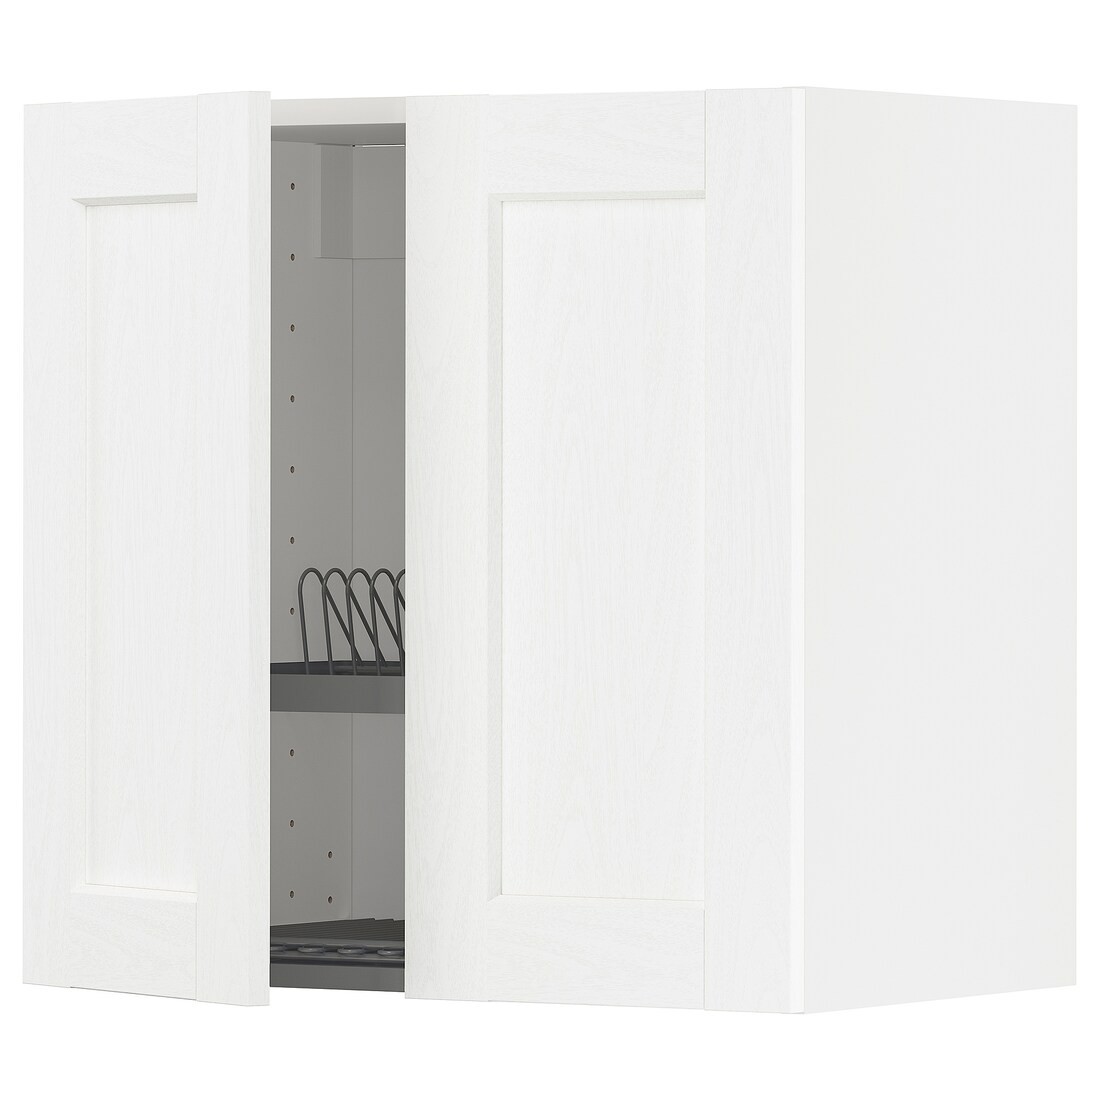 METOD МЕТОД Навісна шафа з посудою сушкою / 2 дверцят, білий Enköping / білий імітація дерева, 60x60 см